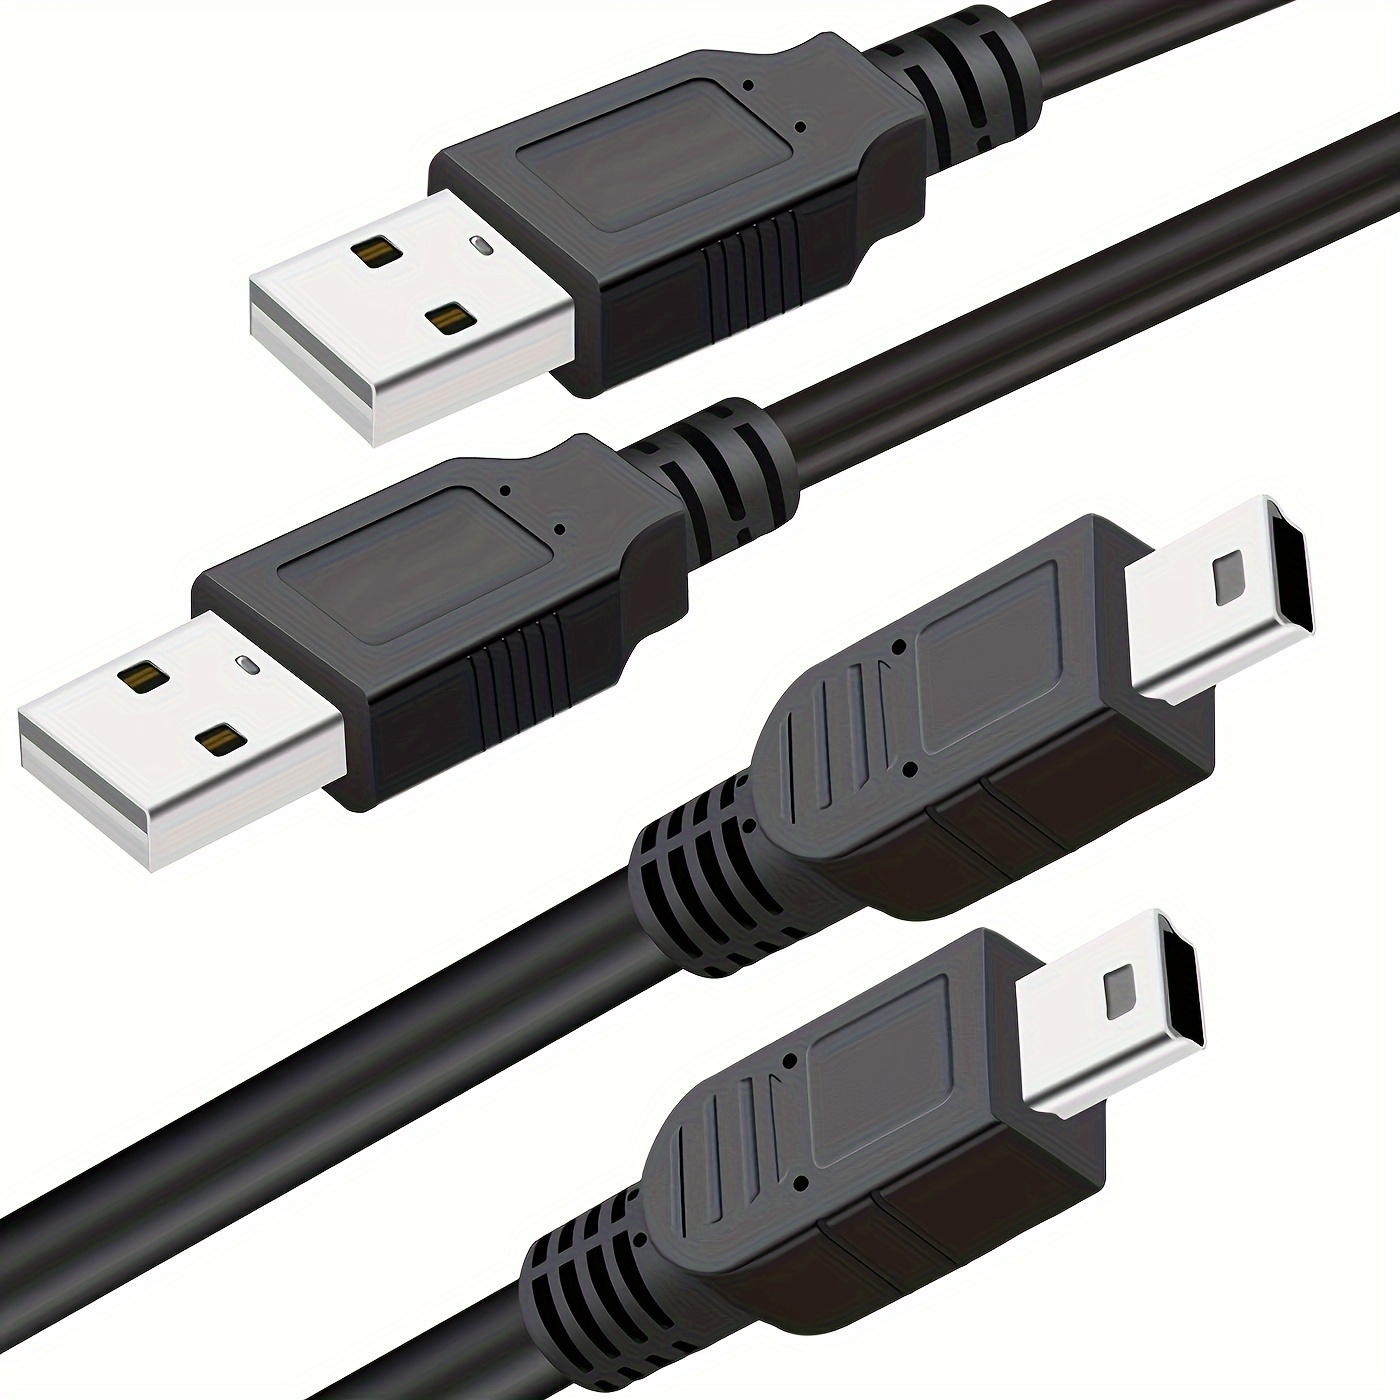 Cable De Recharge Mini USB De 9 Pieds Pour Manette PS3 / PSP / Wii U  Controller Pro Par TTX Tech